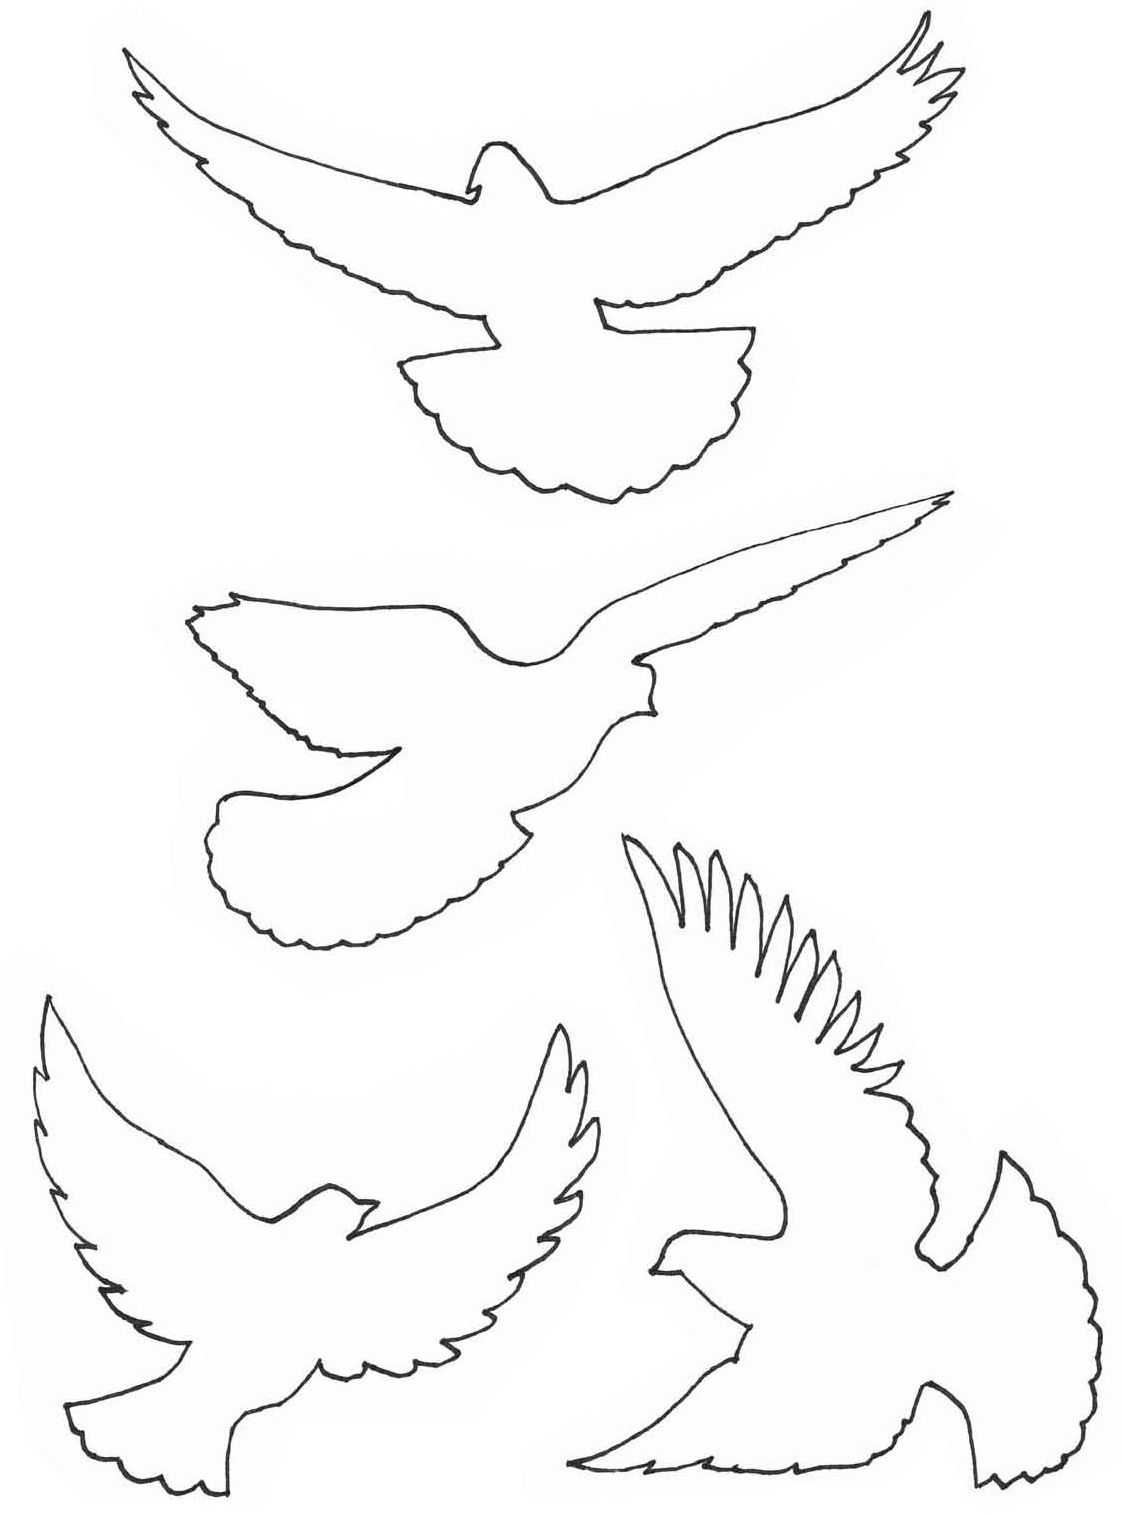 Шаблоны голубей из бумаги для распечатки на принтере: Шаблоны из бумаги для распечатки на принтере: бабочки, звери, цветы, голуби